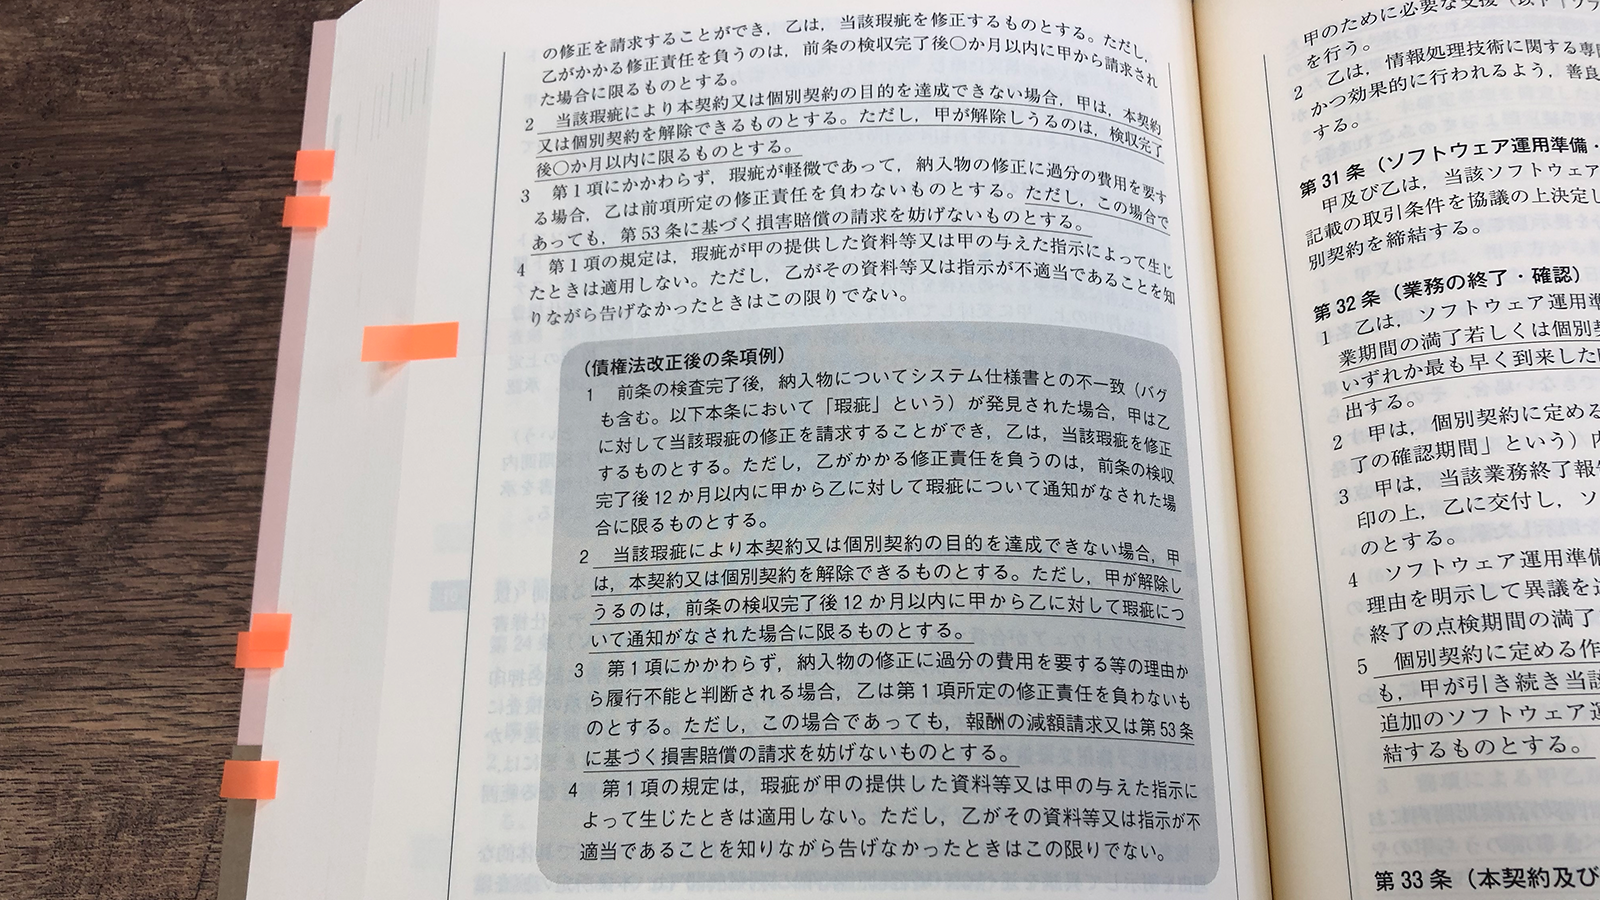 阿部・井窪・片山法律事務所『契約書作成の実務と書式 第2版』P412